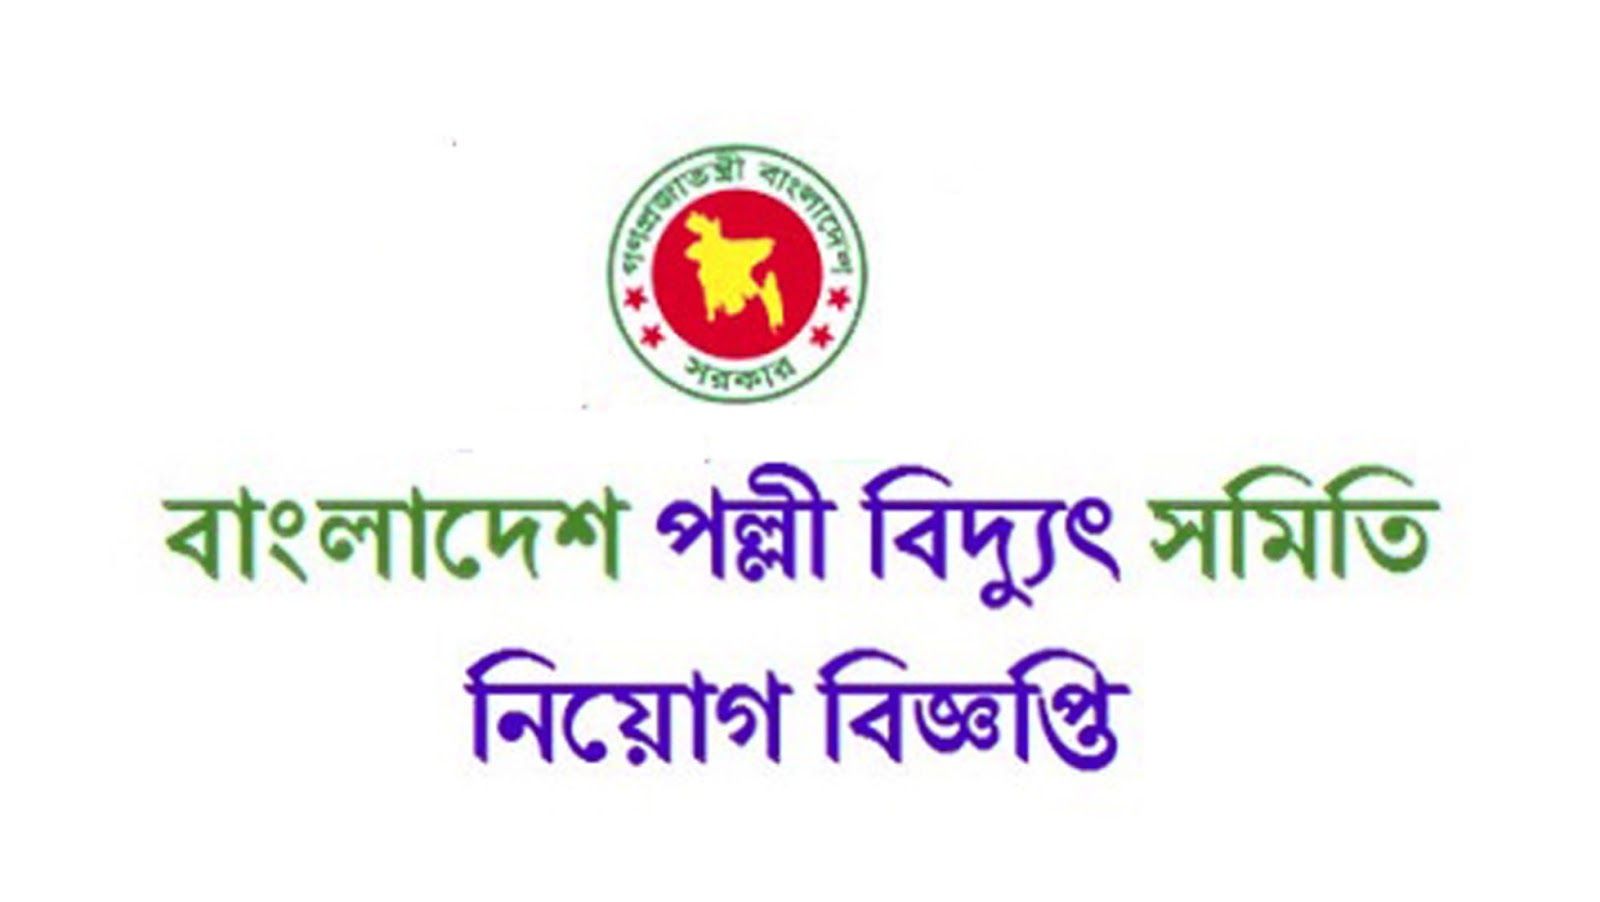 বাংলাদেশ পল্লী বিদ্যুৎ সমিতি জব সার্কুলার ২০১৯ || Bangladesh Palli Bidyut Samity Job Circular 2019